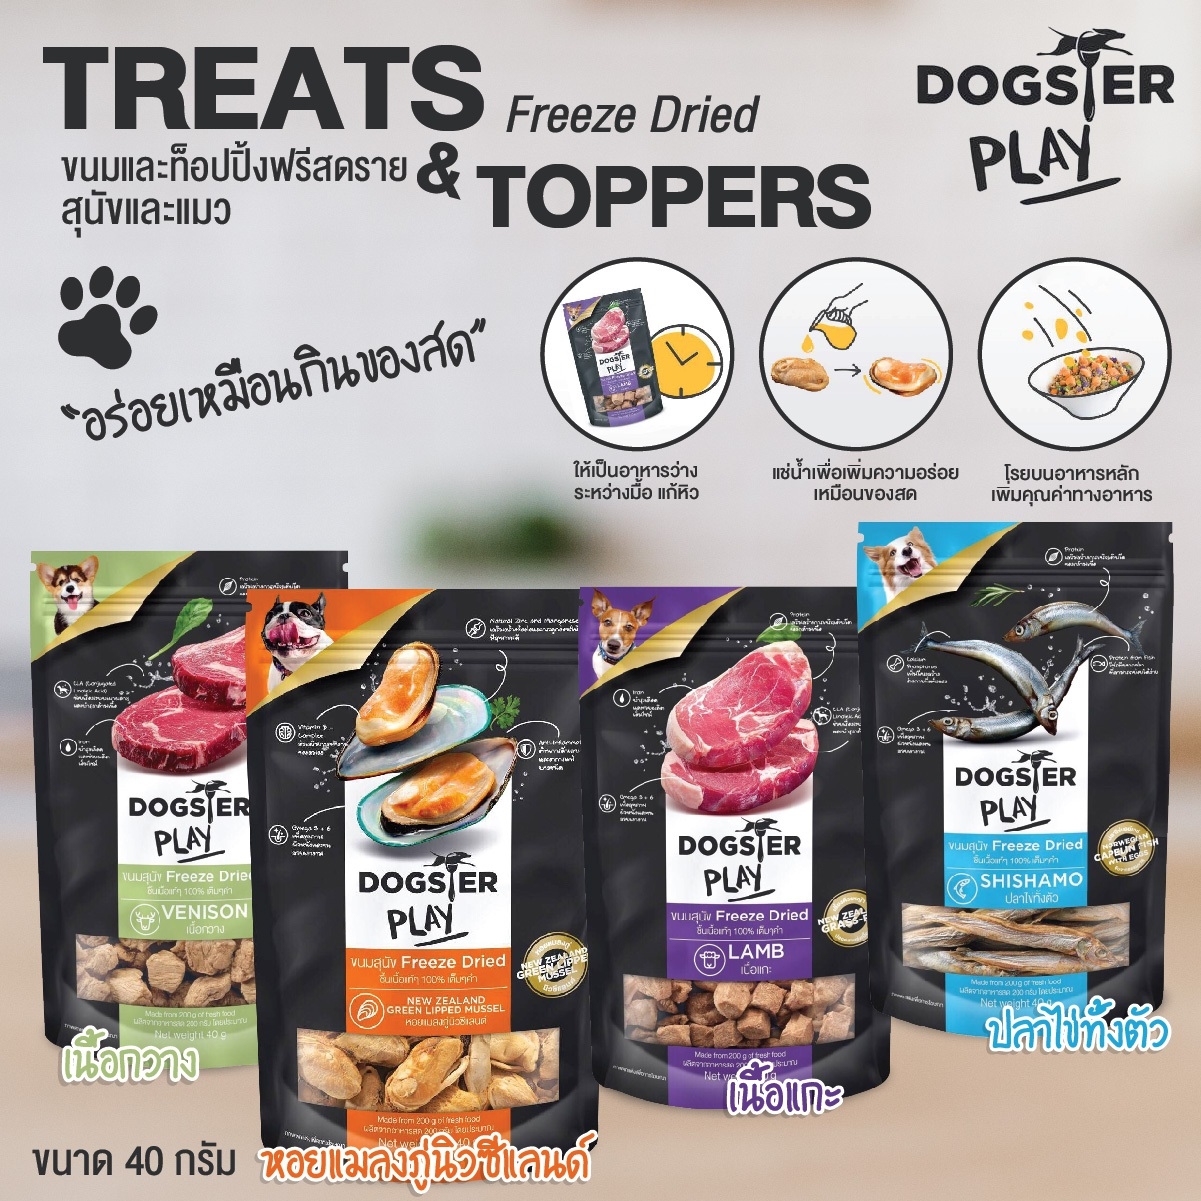 ท๊อปปิ้งโรยอาหาร สำหรับสุนัขและแมว ขนมสุนัข ขนมแมว Dogster ด็อกส์เตอร์ จากเนื้อแท้ๆ ขนาด 40 g (แบบตัวเลือก) โดย Yes pet shop